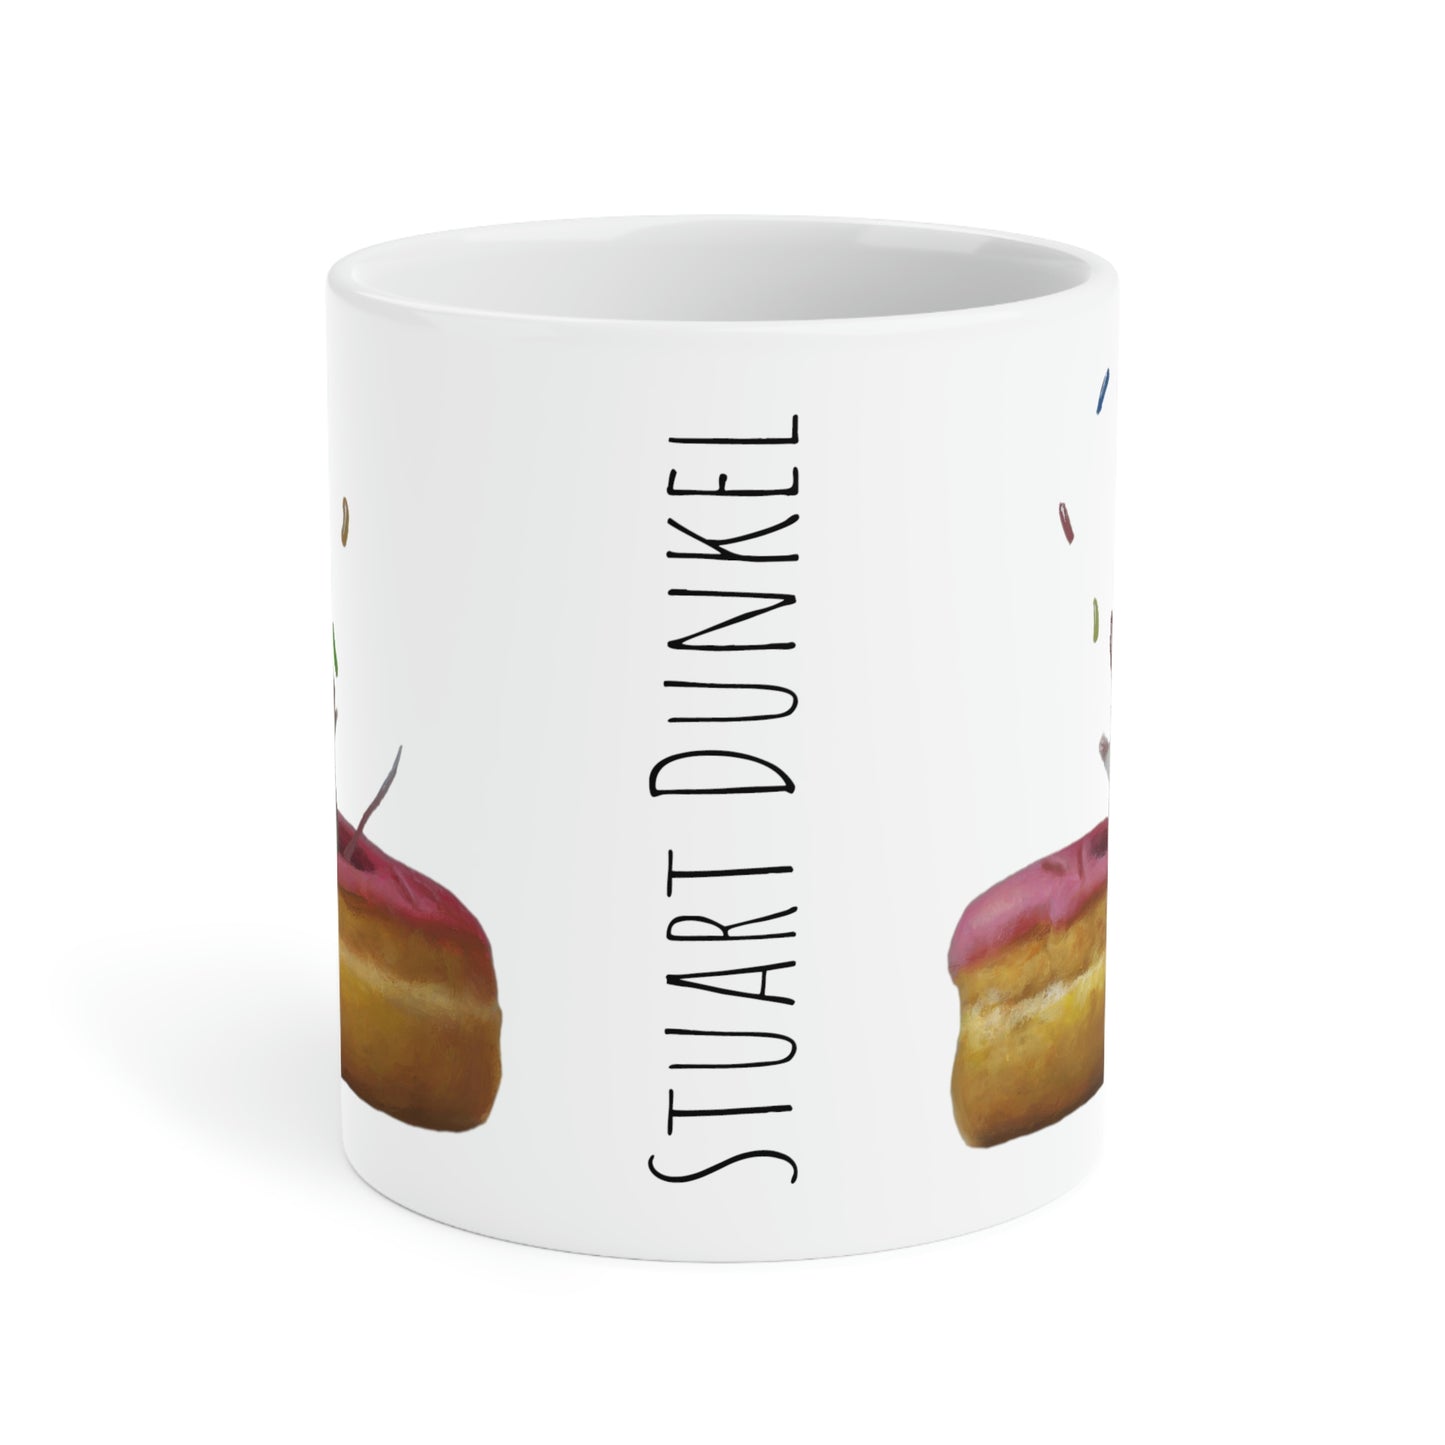 Stuart Dunkel: "Donut Fun - Dunkel" Ceramic Mug (11oz\15oz\20oz)